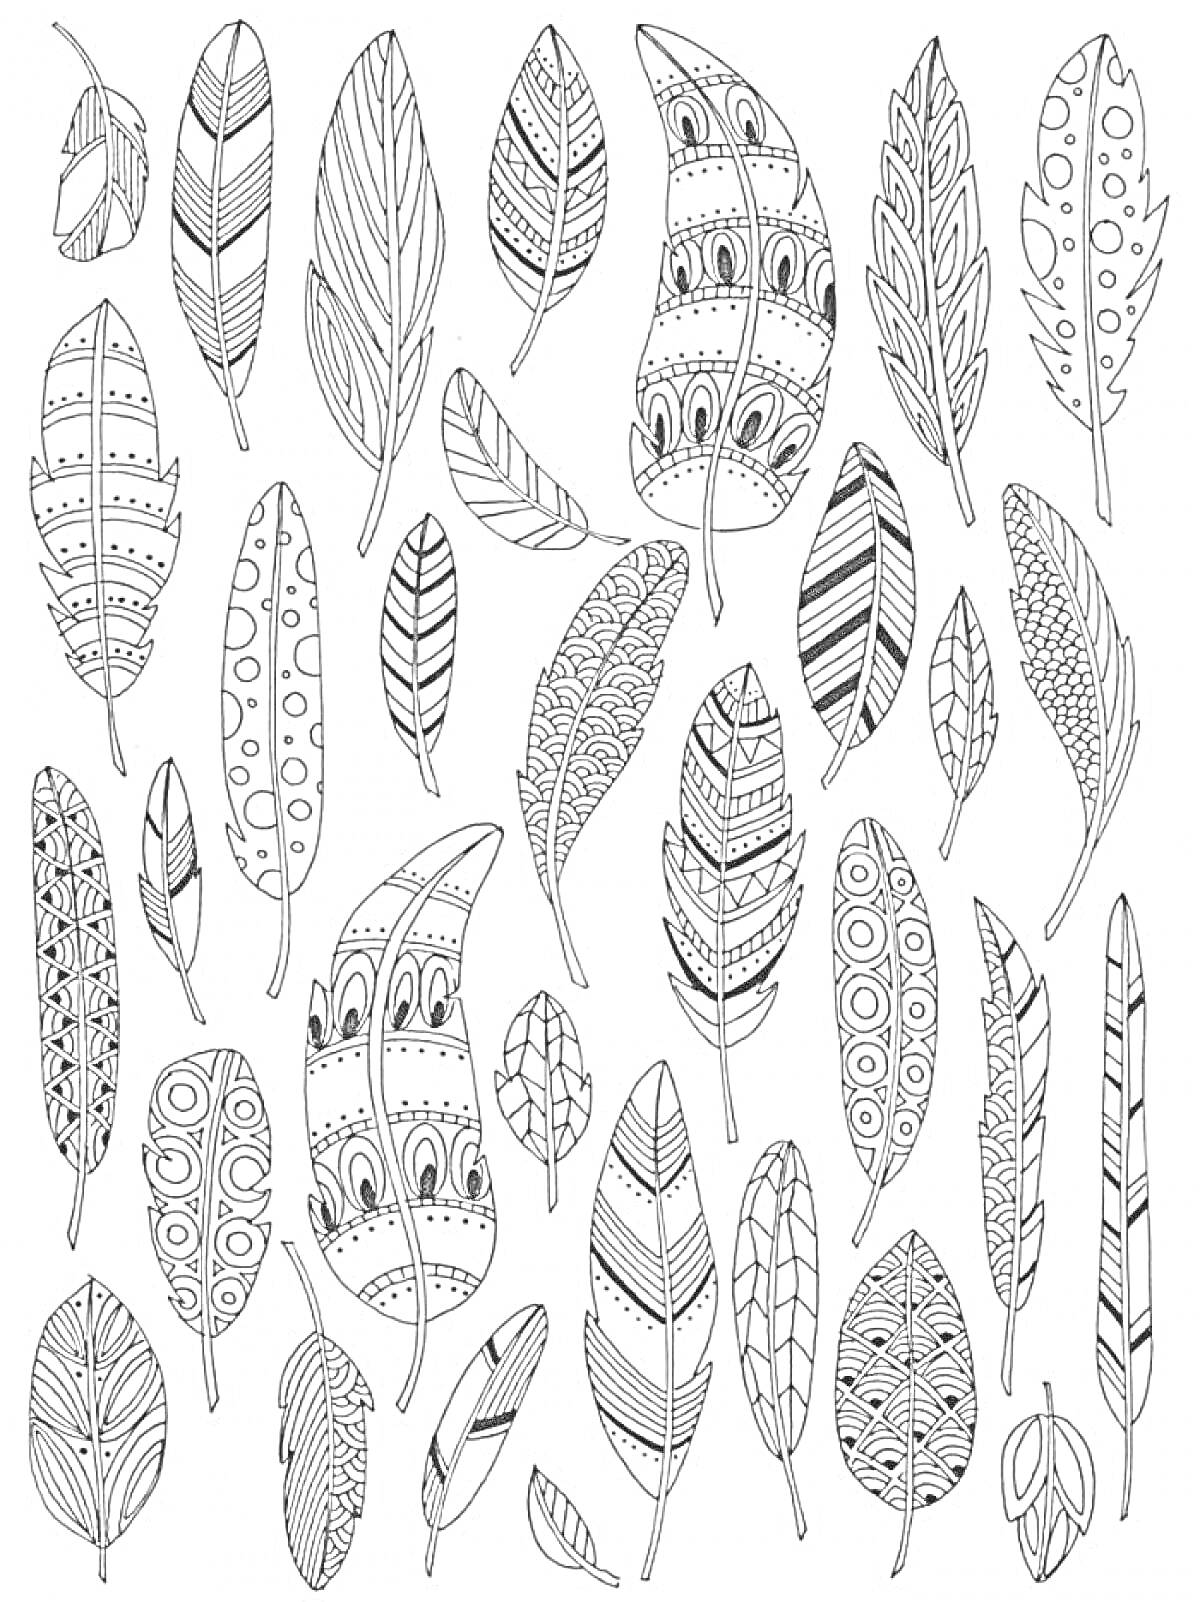 Раскраска с различными перьями с геометрическими и растительными узорами